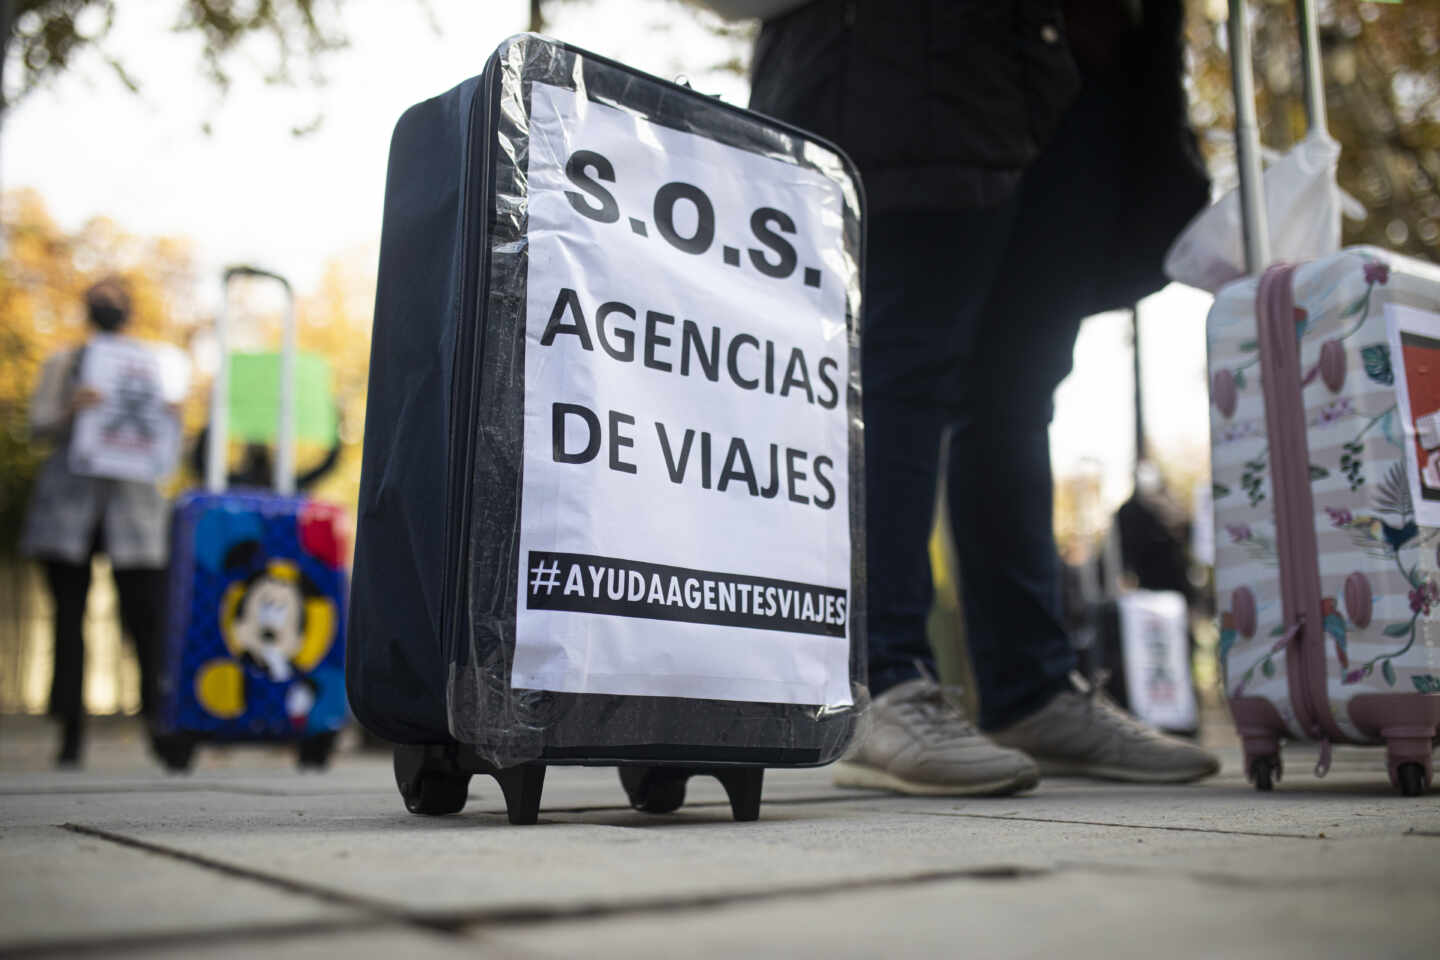 Un cartel de protesta en una concentración de agencias de viajes en el que se lee: "S.O.S Agencias de viajes"